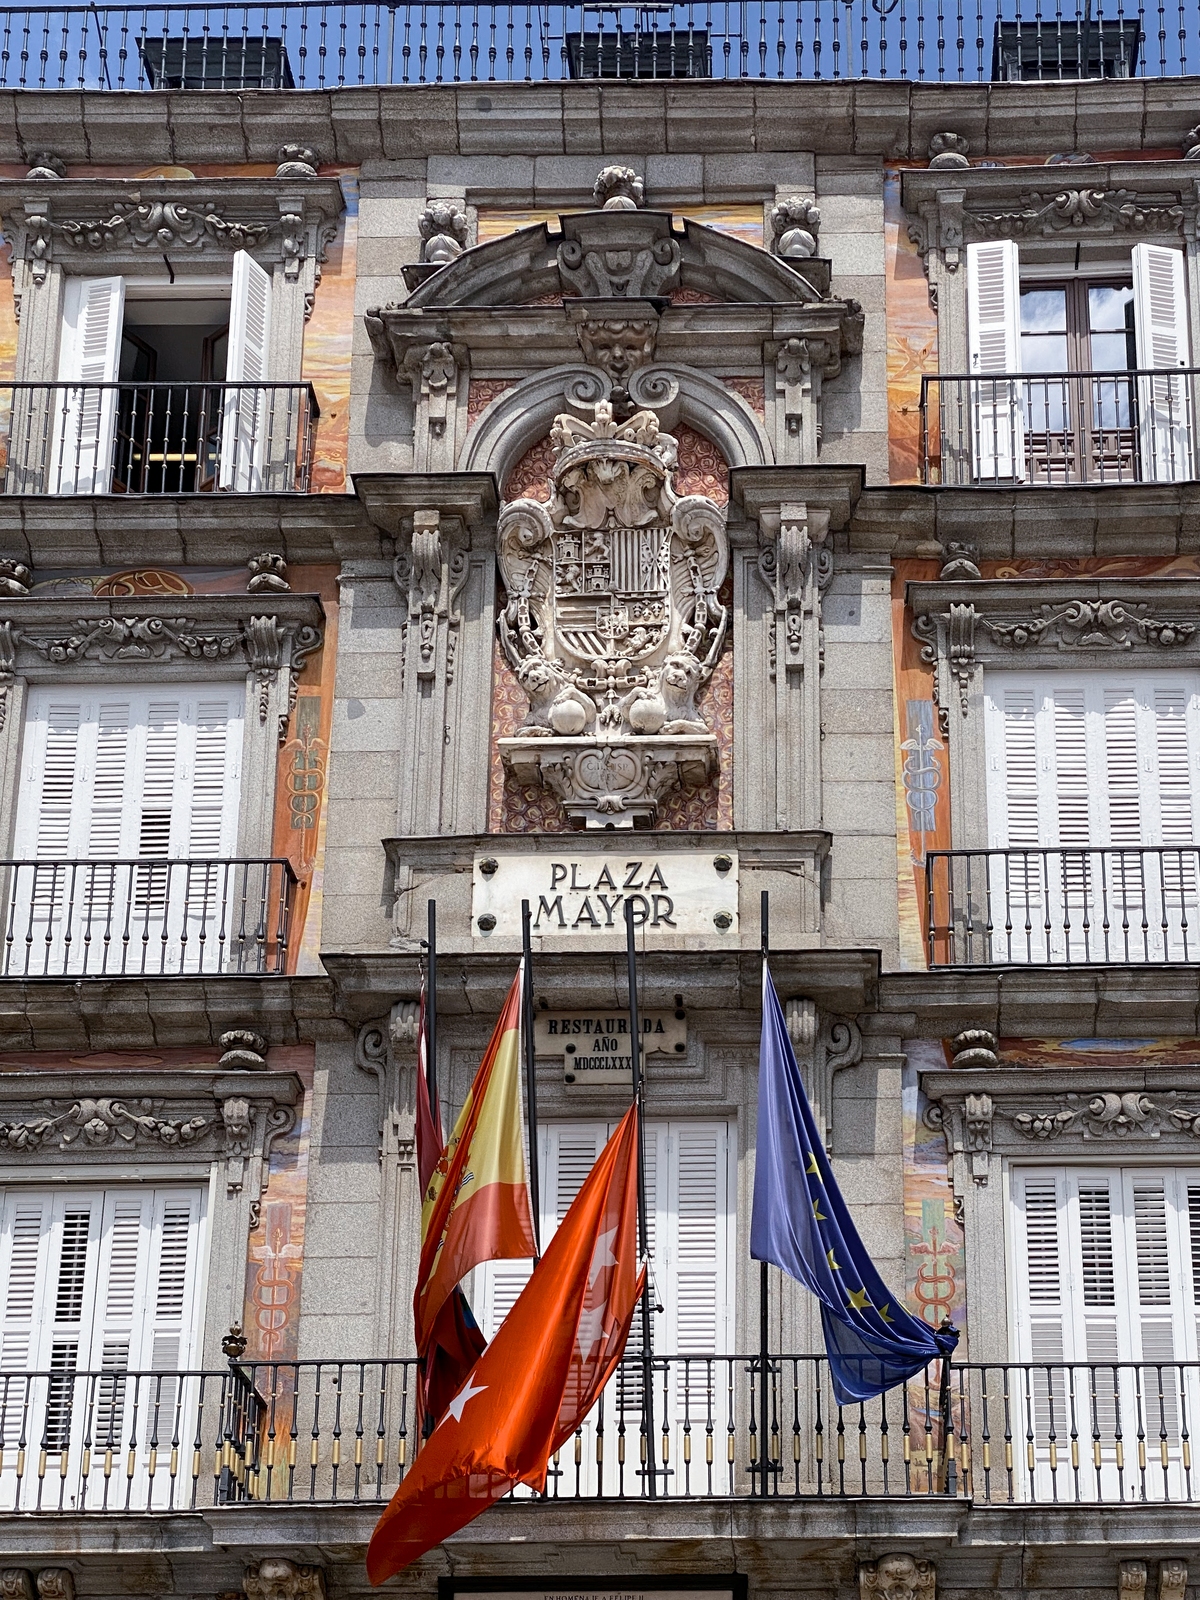 Image of Plaza Mayor, Madrid, Spain by Team PhotoHound